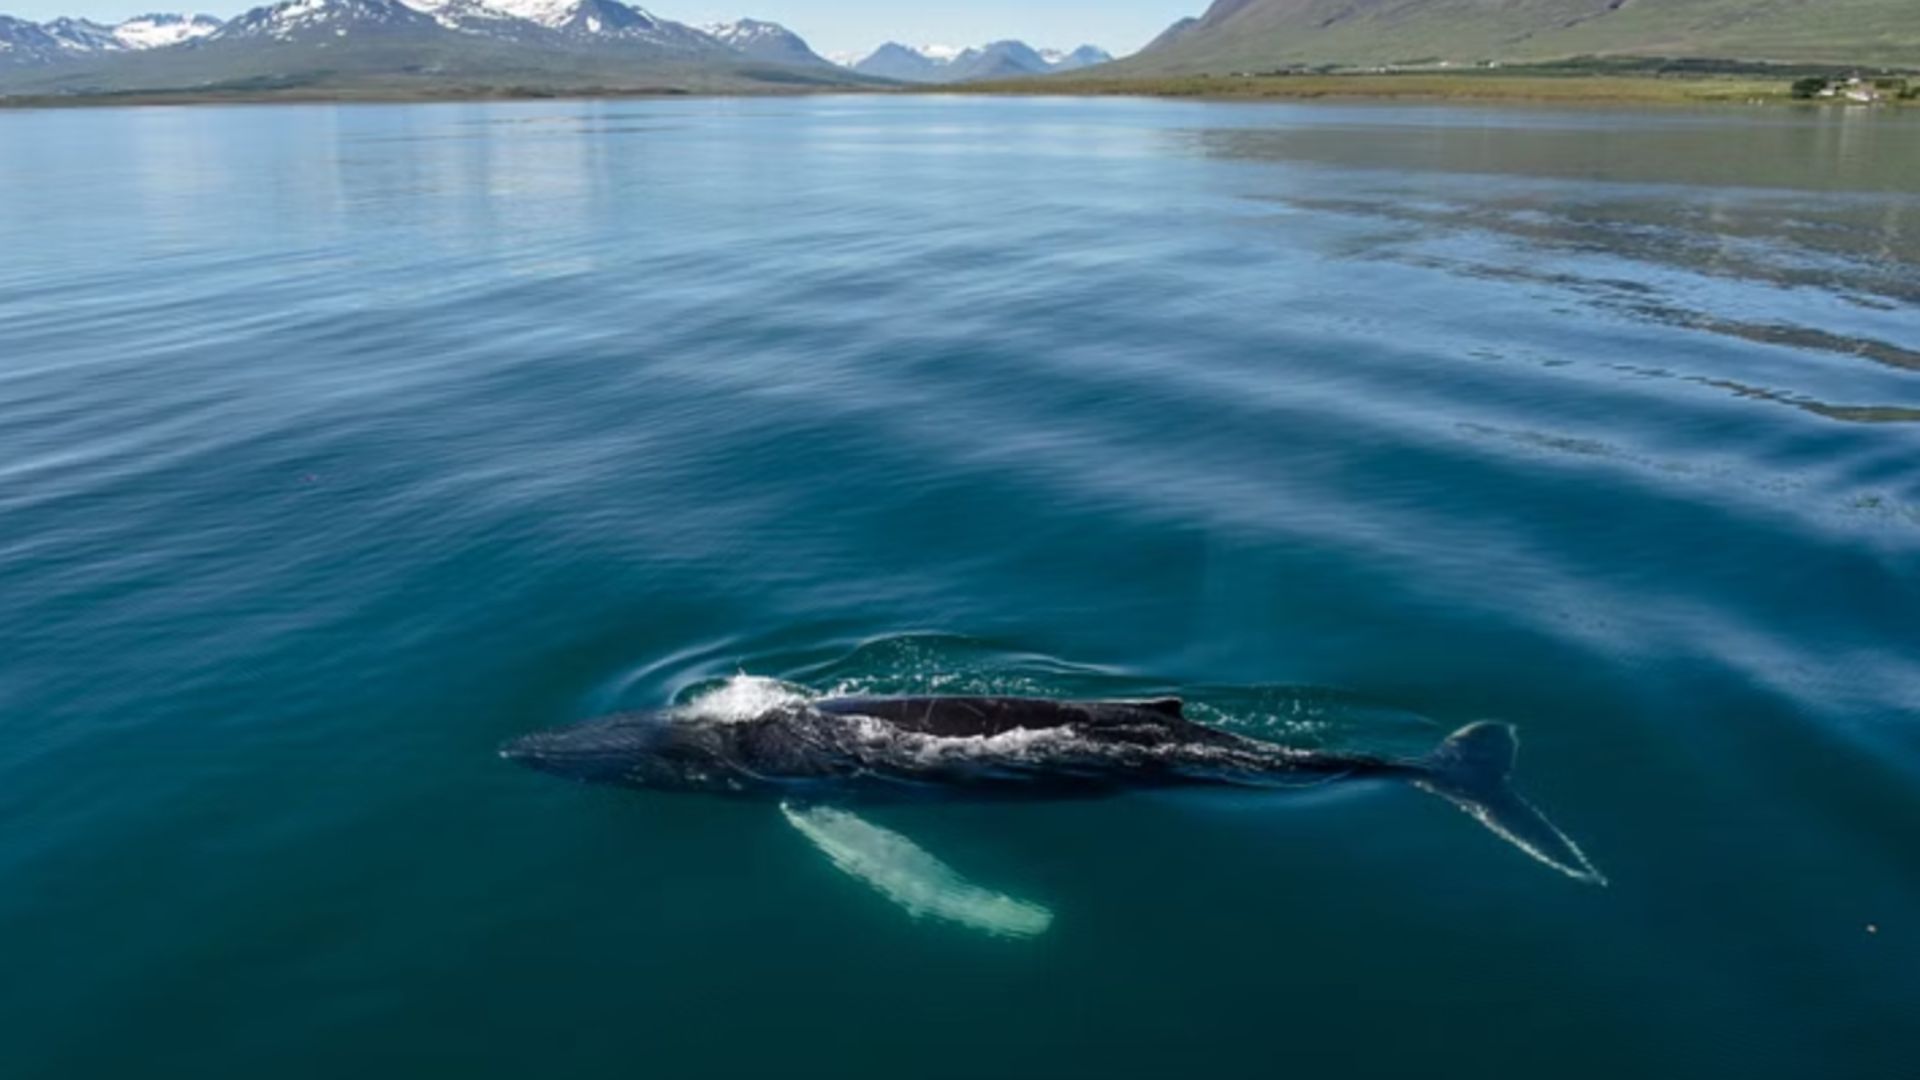 Whale Watching Akureyri